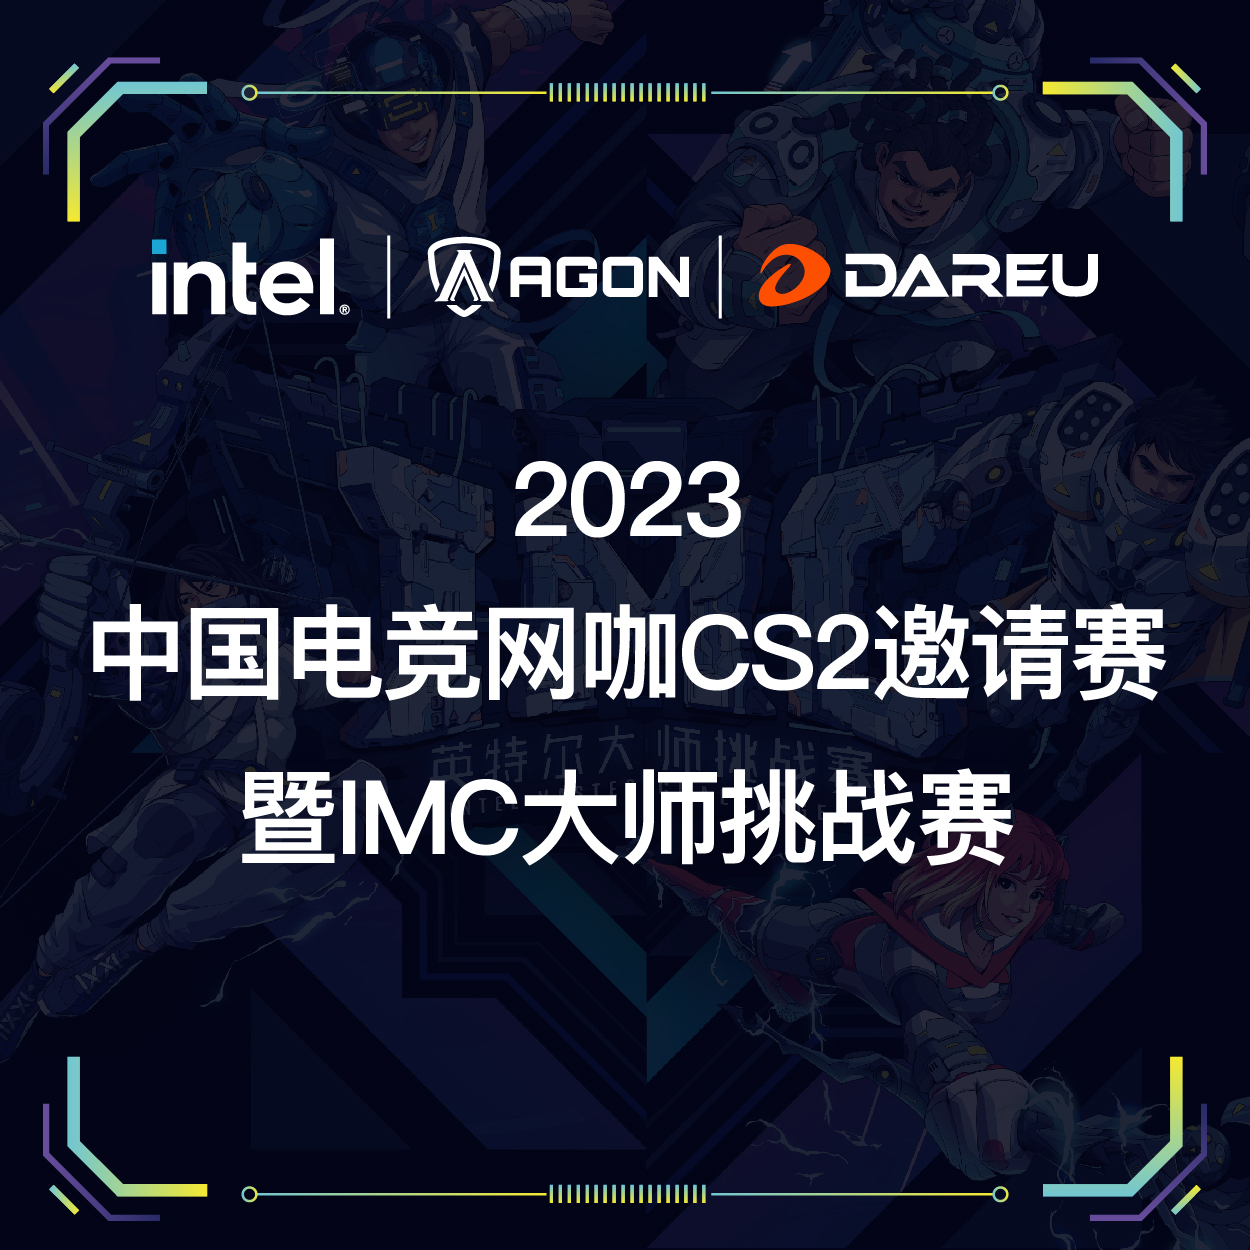 2023中国电竞网咖CS2邀请赛暨IMC-乌鲁木齐站